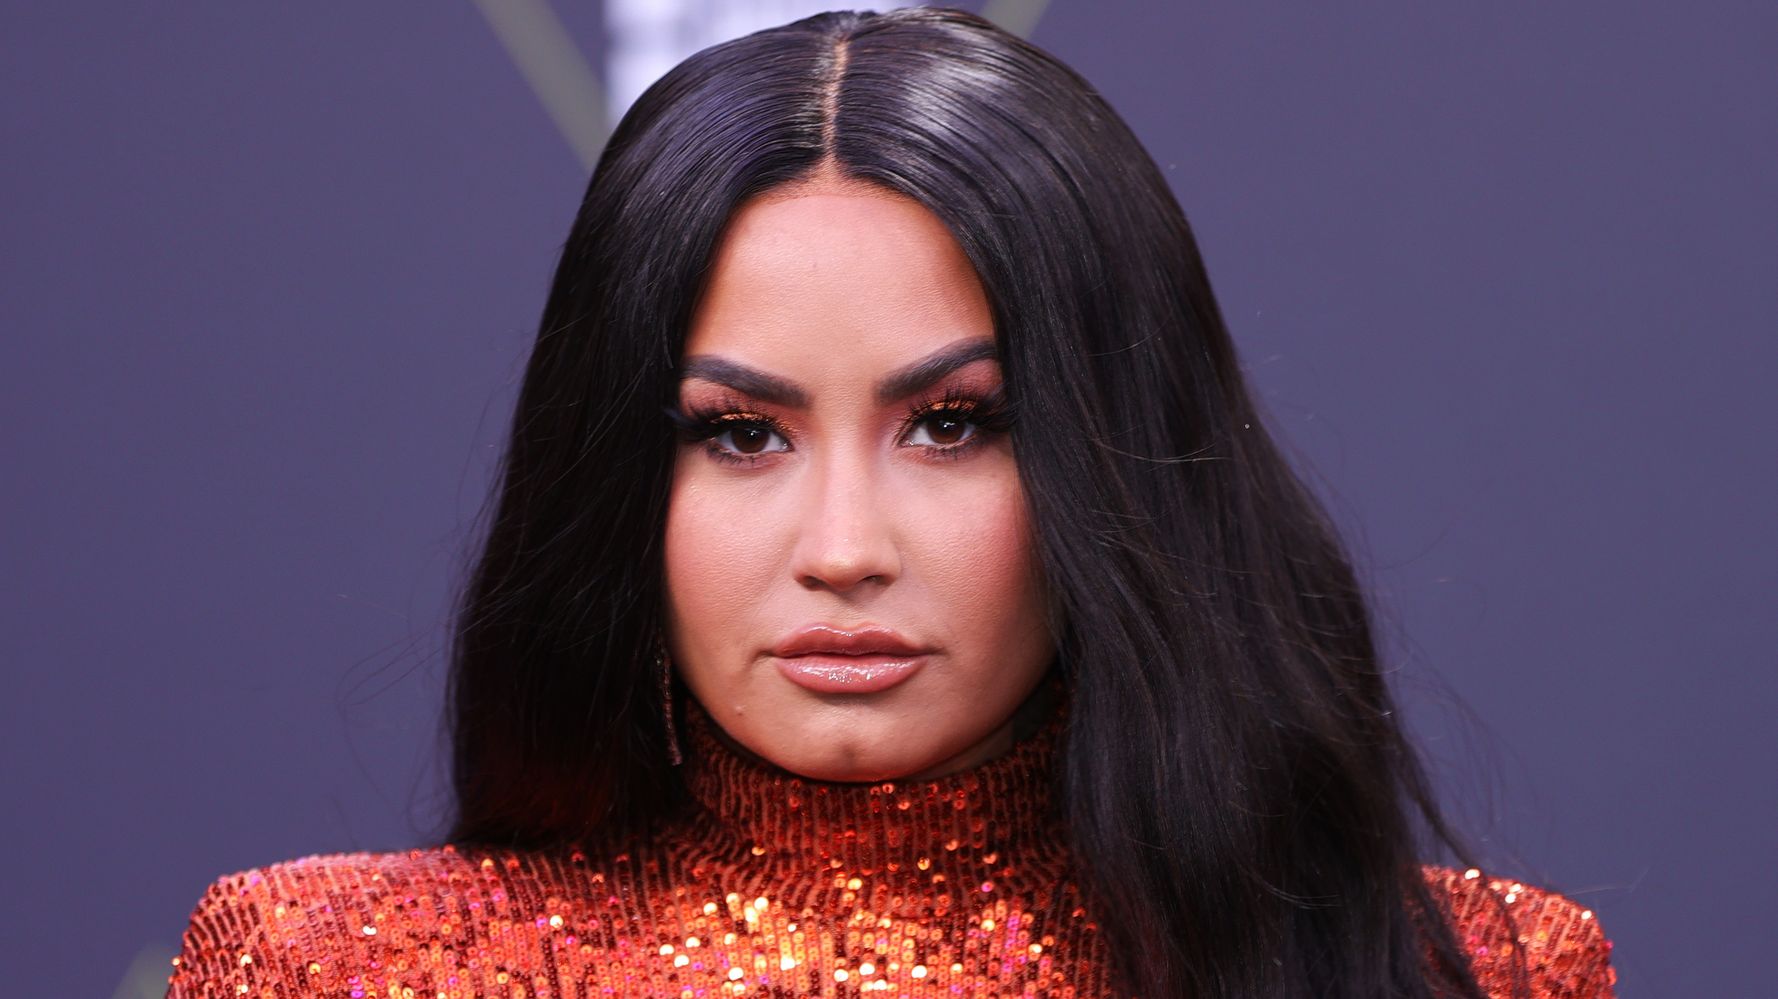 Demi Lovato says she suffered a heart attack, stroke and overdose brain damage